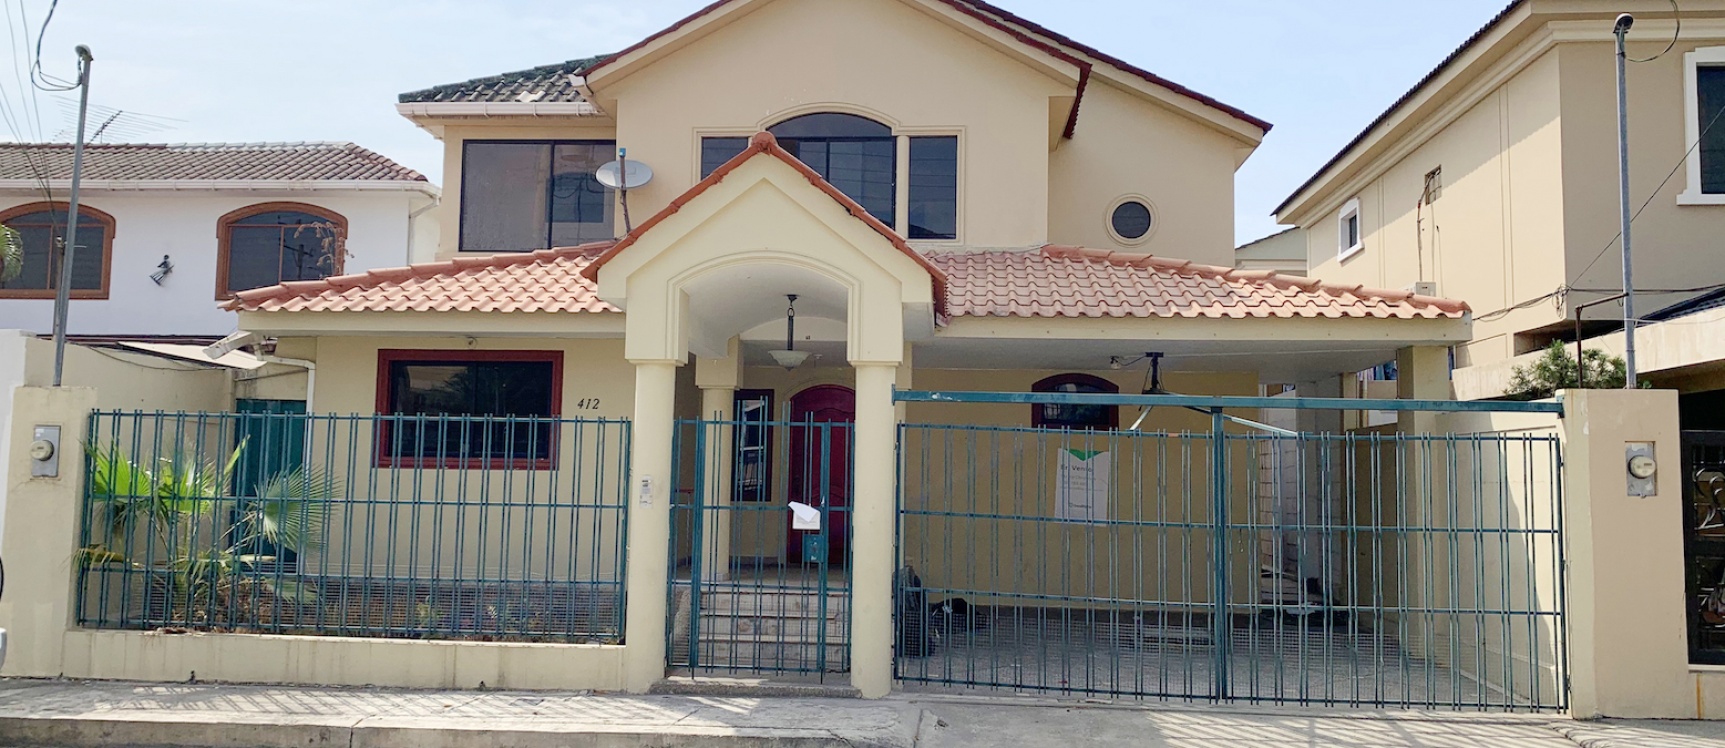 GeoBienes - Casa en venta ubicada en Ceibos Norte, Norte de Guayaquil - Plusvalia Guayaquil Casas de venta y alquiler Inmobiliaria Ecuador